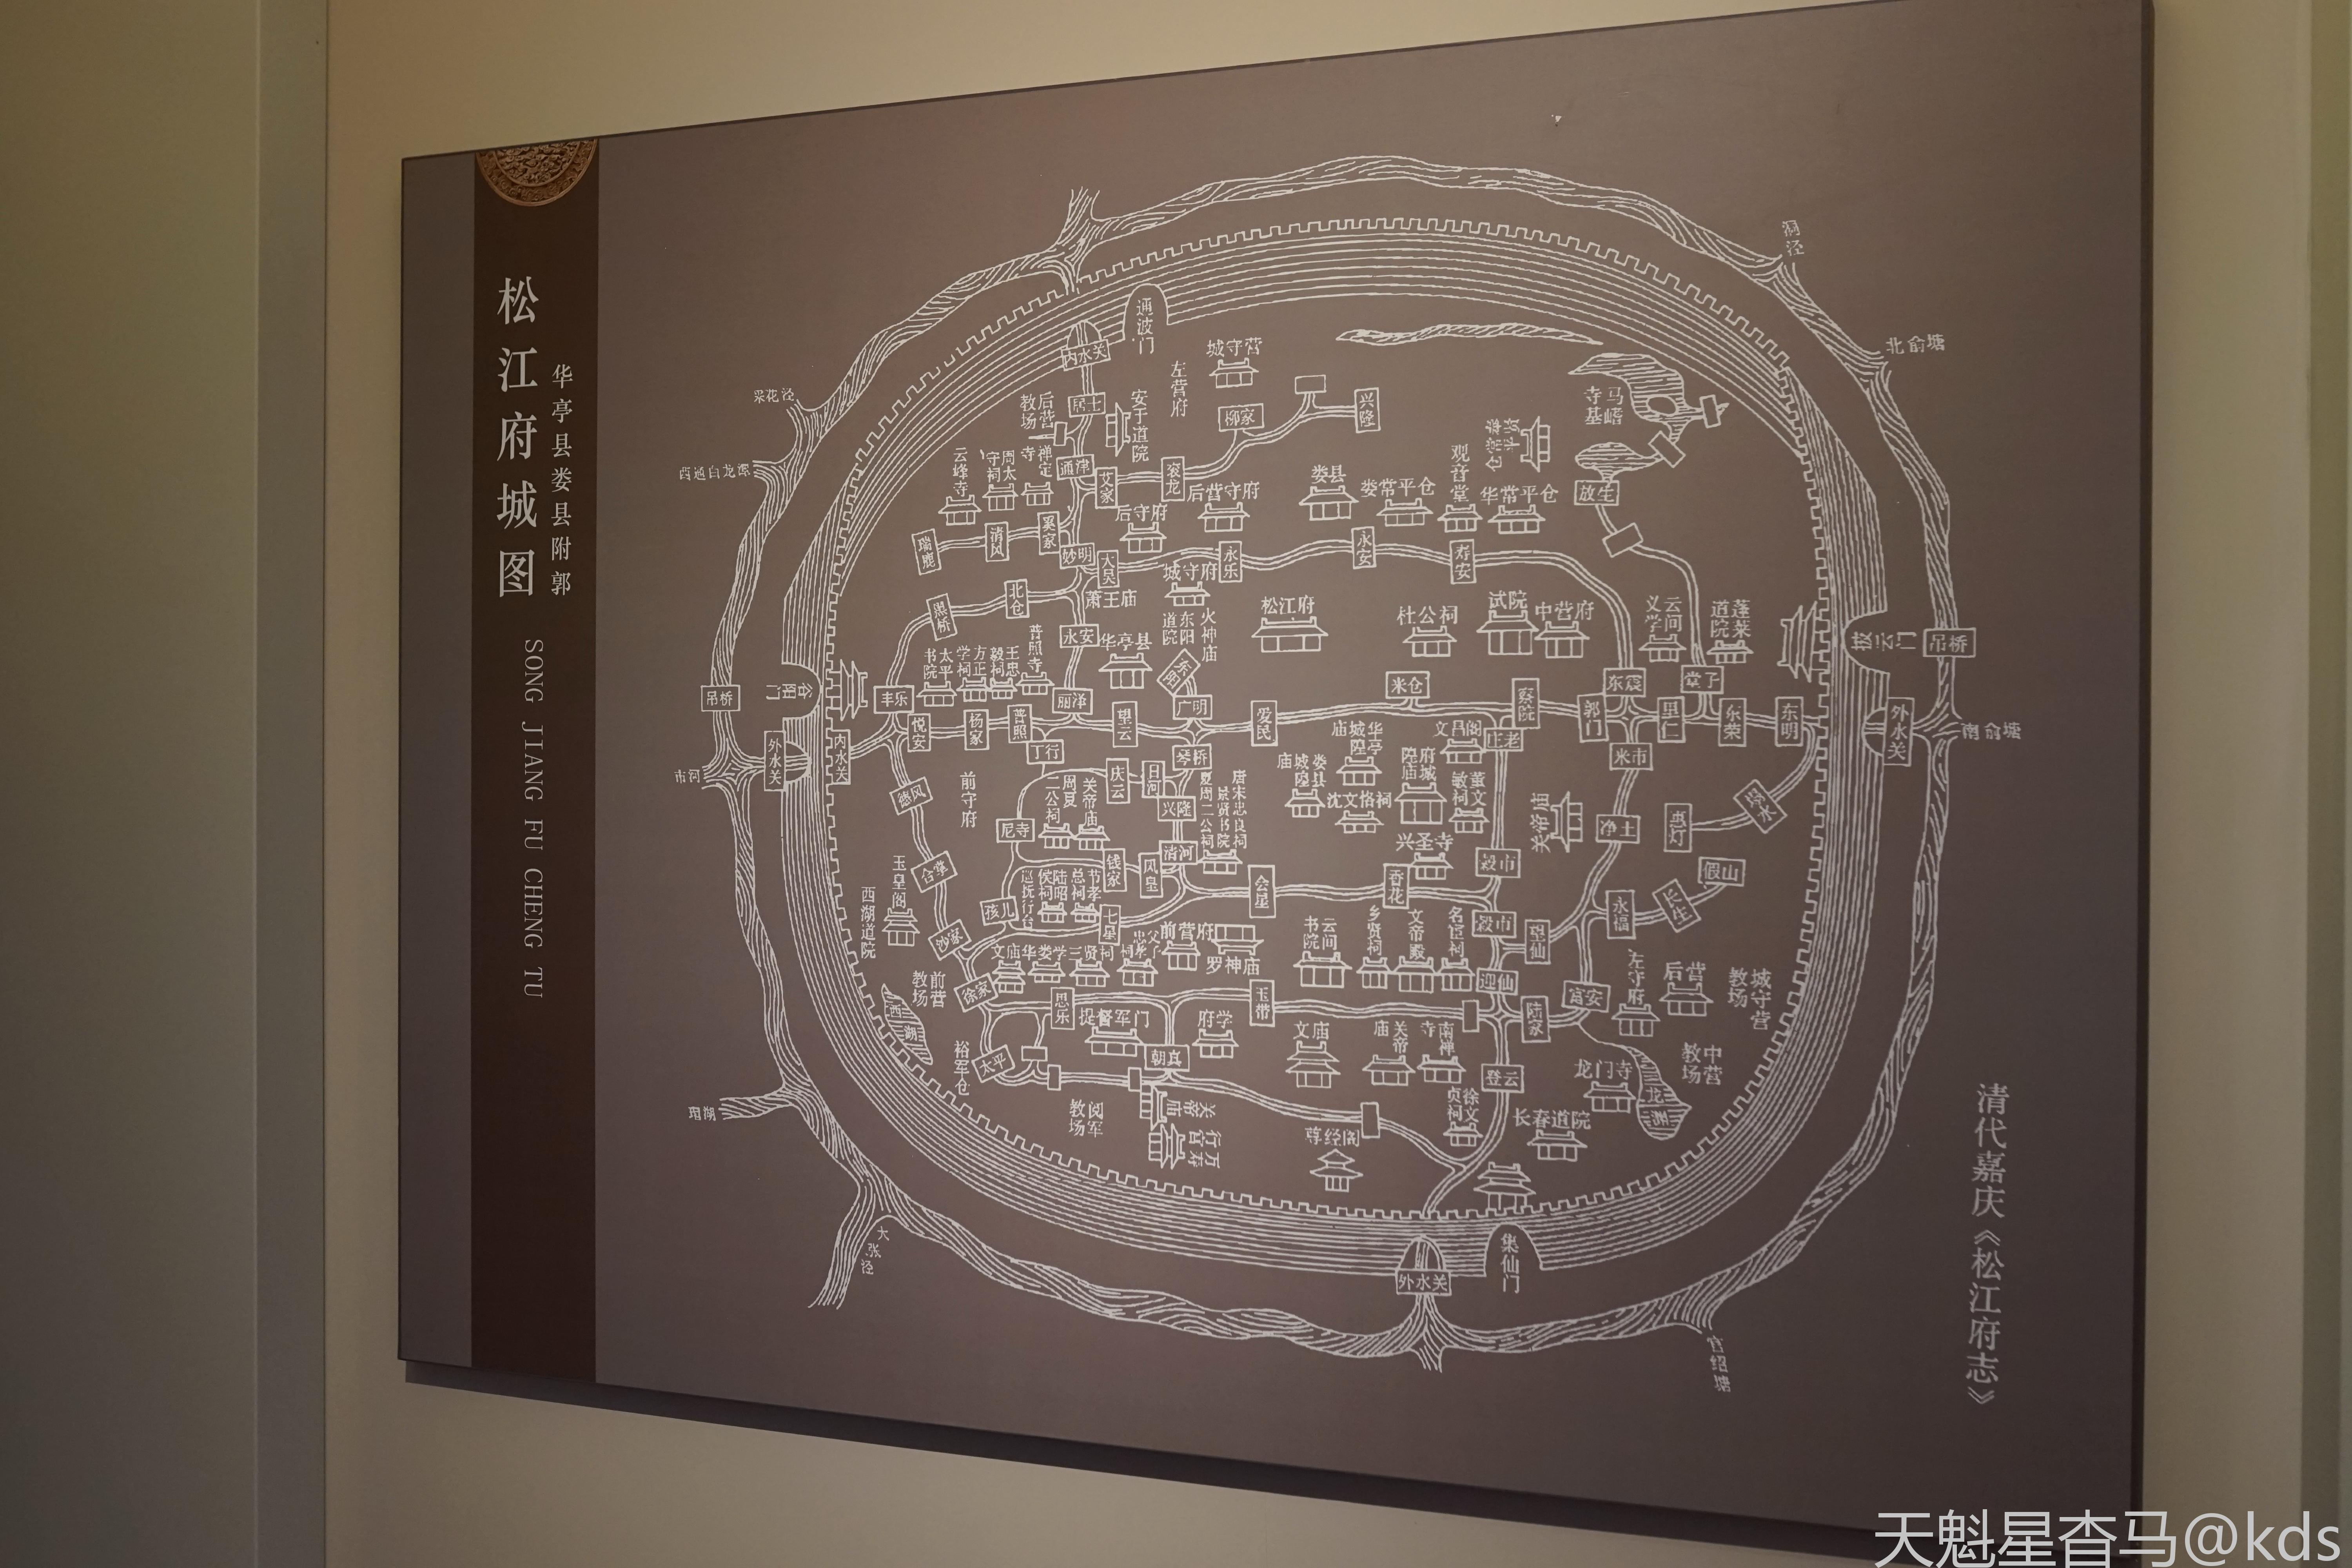 博物馆里的松江老地图,看出来以前有城墙,还是圆形的